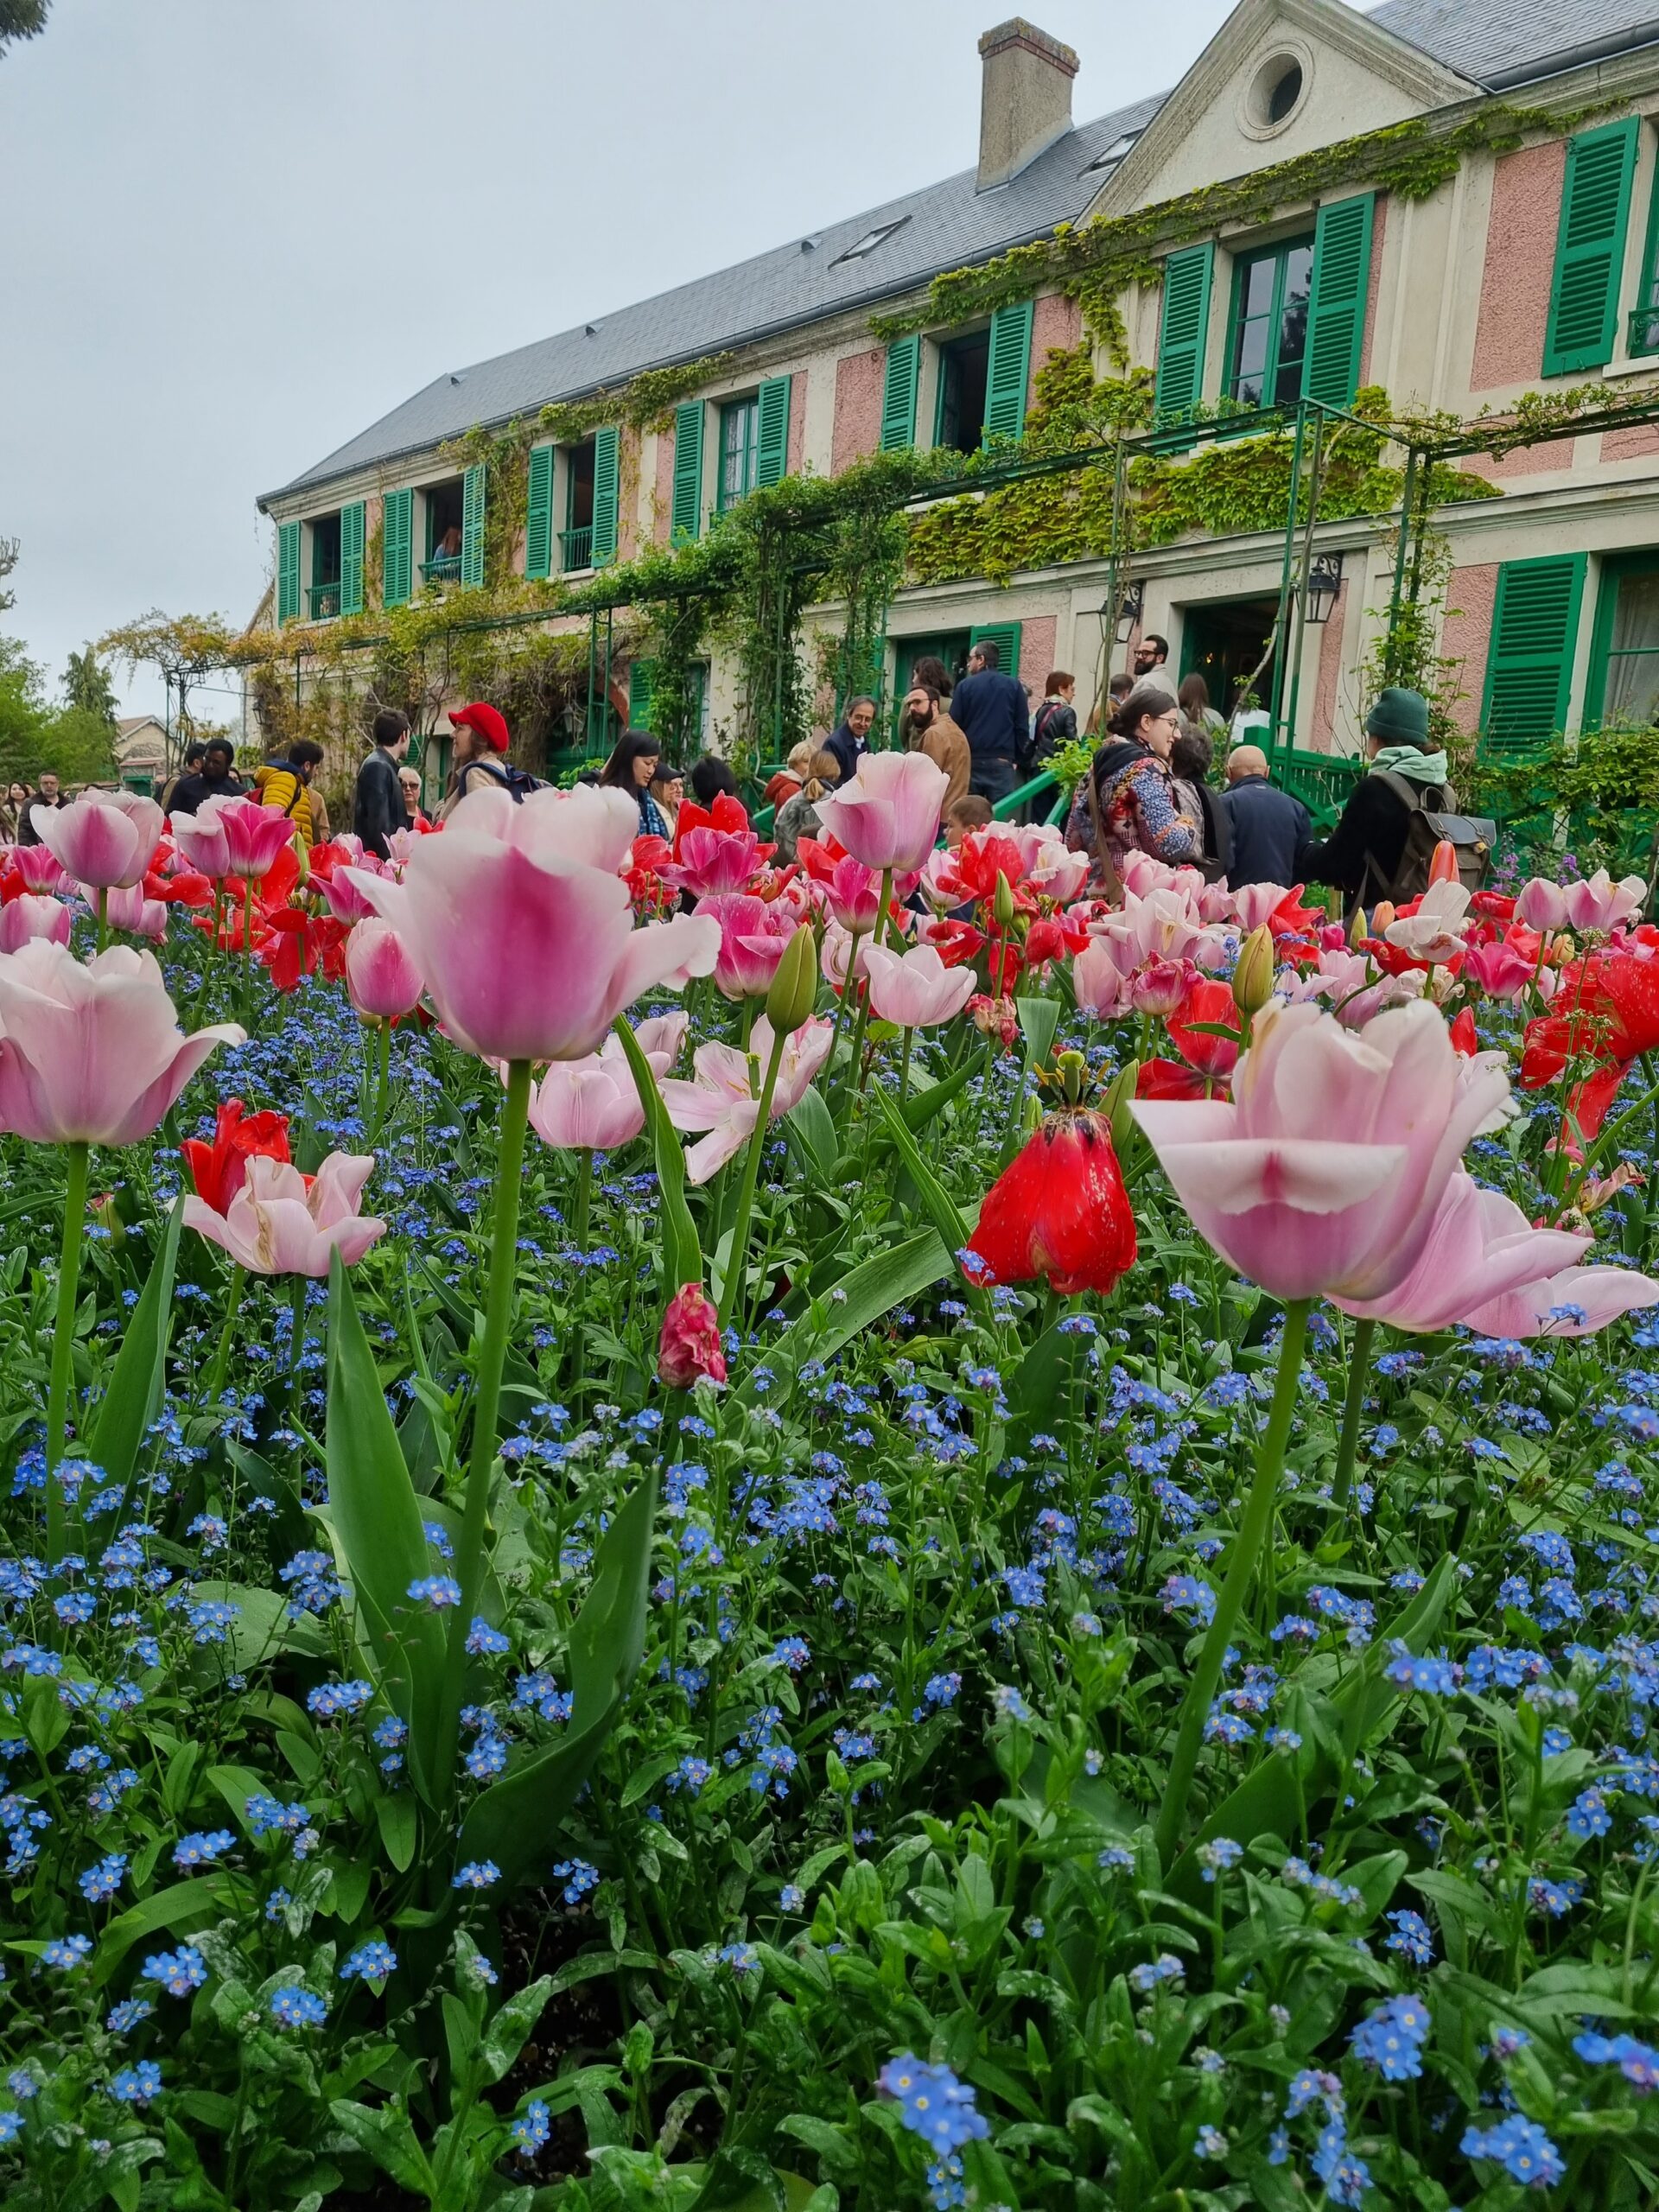 Bem-vindo a Giverny em Monet, pintor e jardineiro